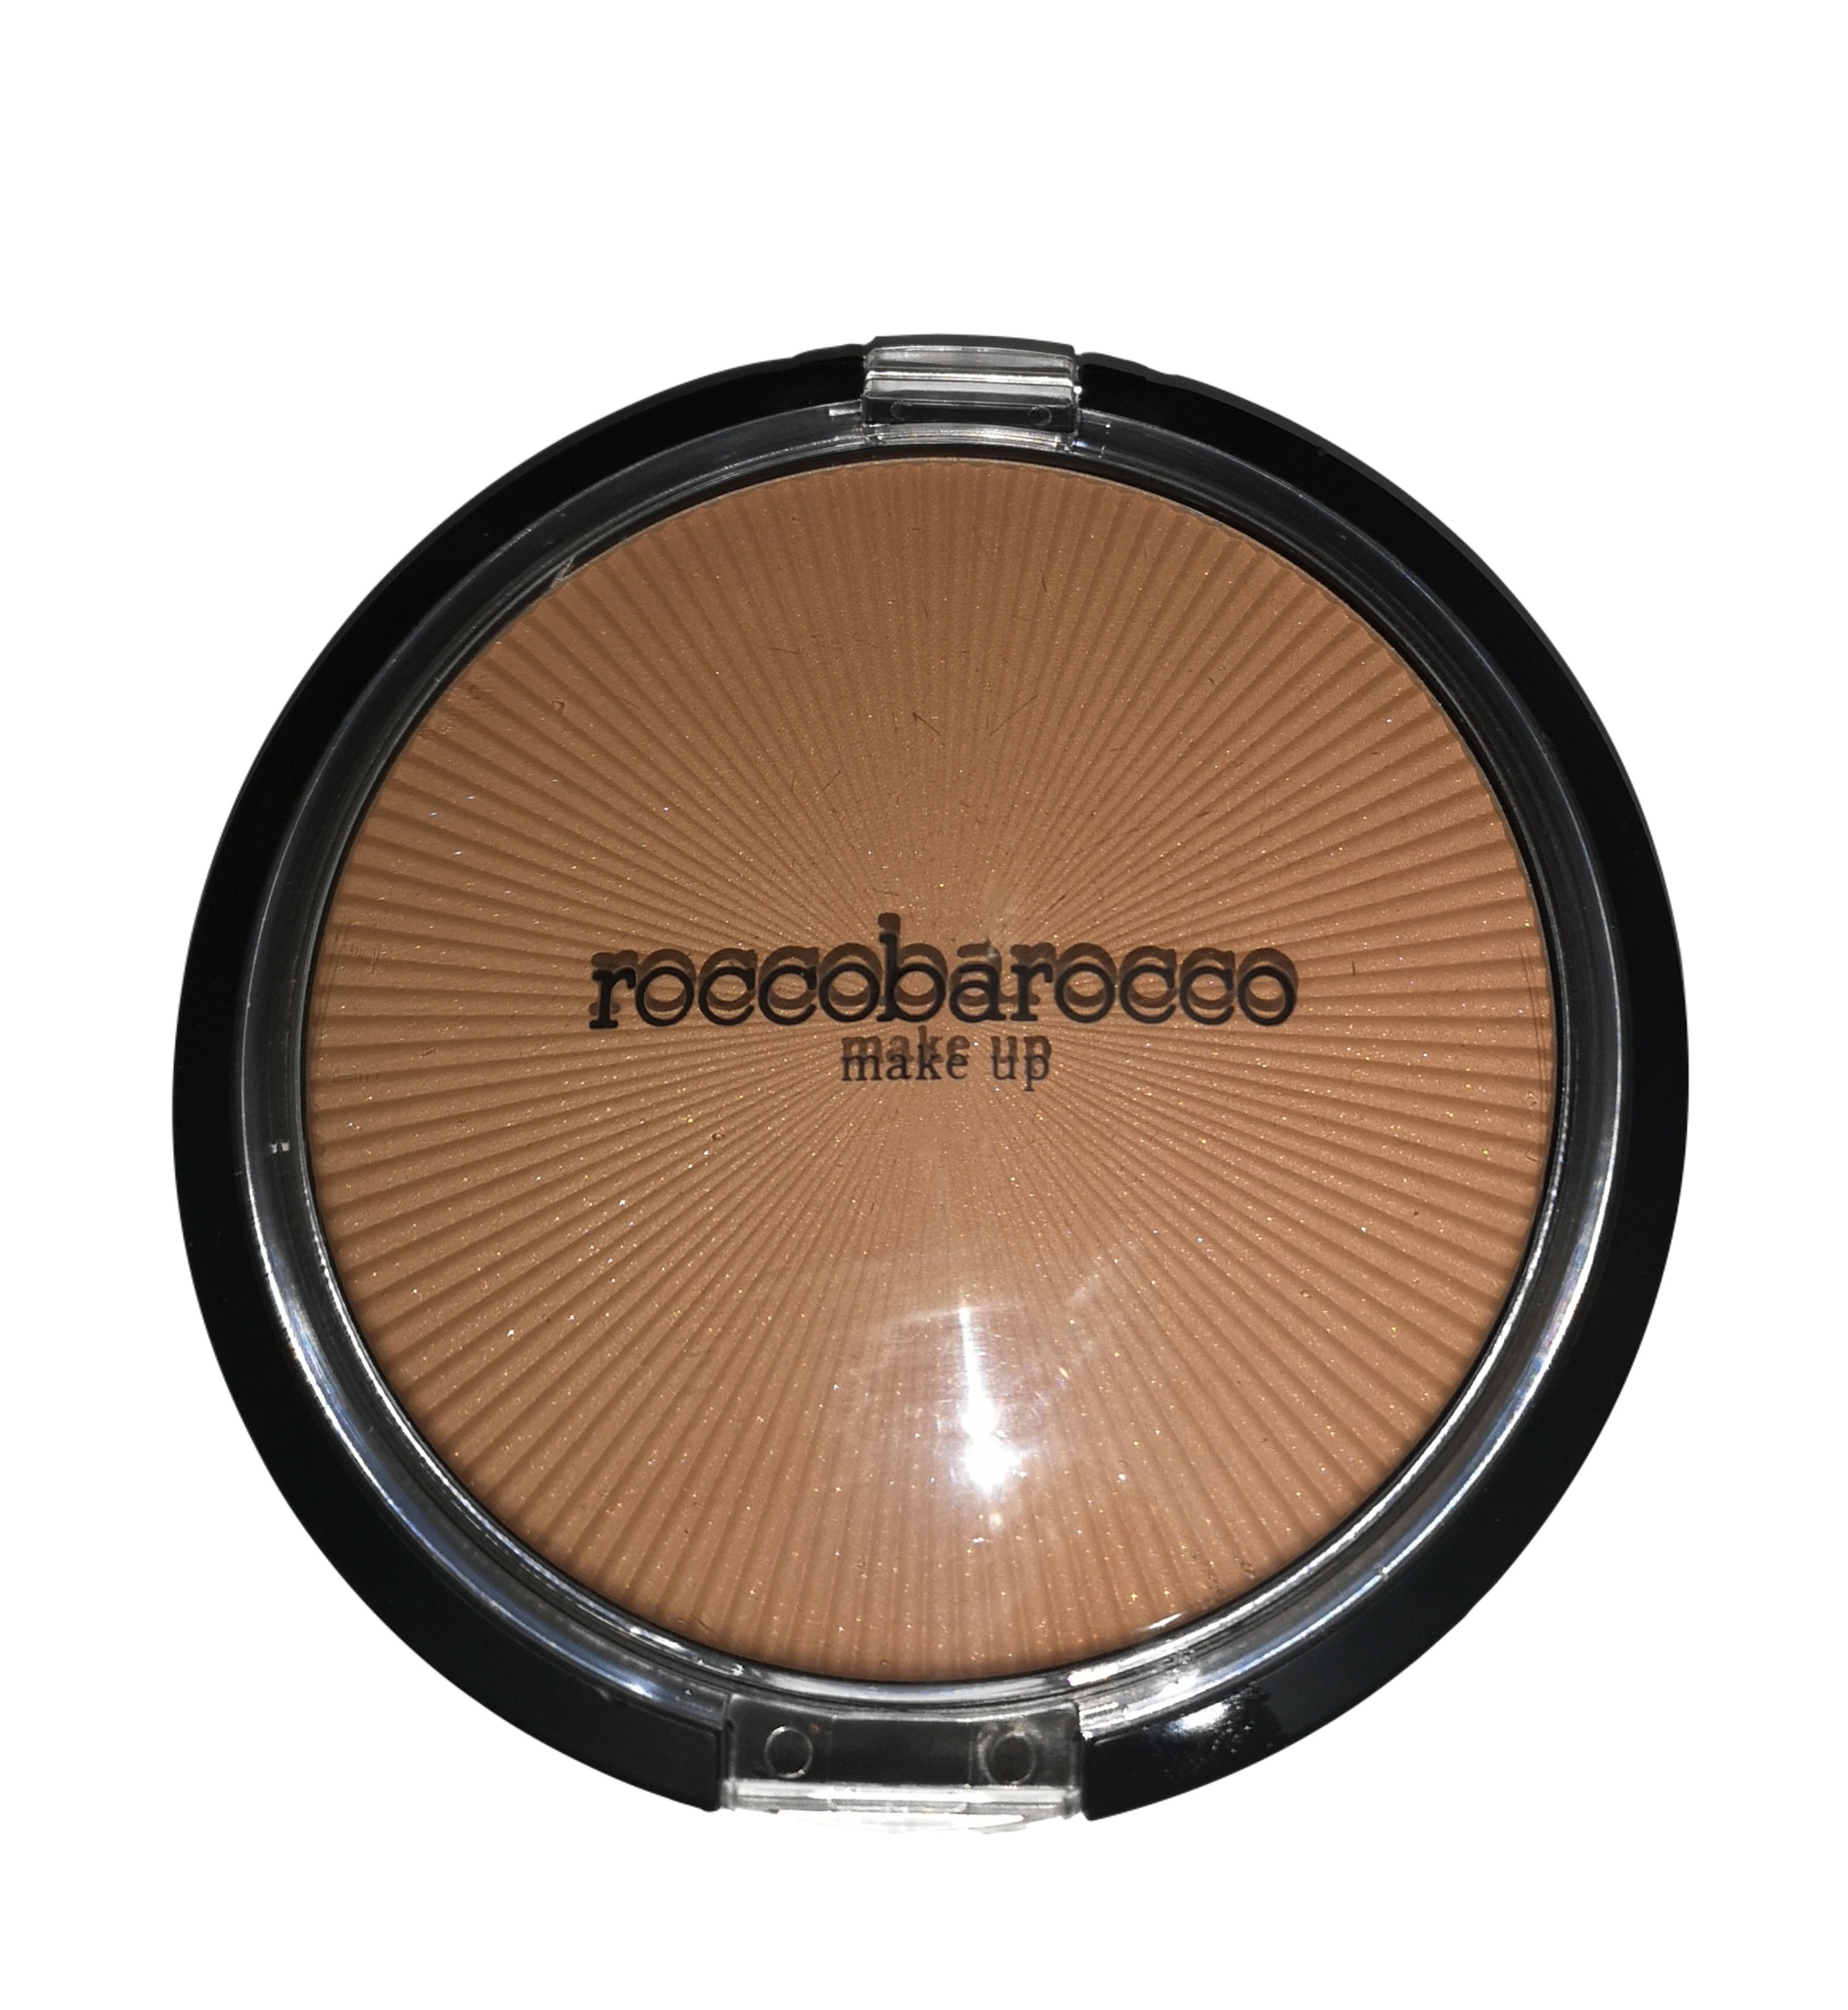 ROCCOBAROCO MAXI DESERT BRONZING POWDER N.023 Terra Compatta Effetto Abbronzante maxi-formato 35G